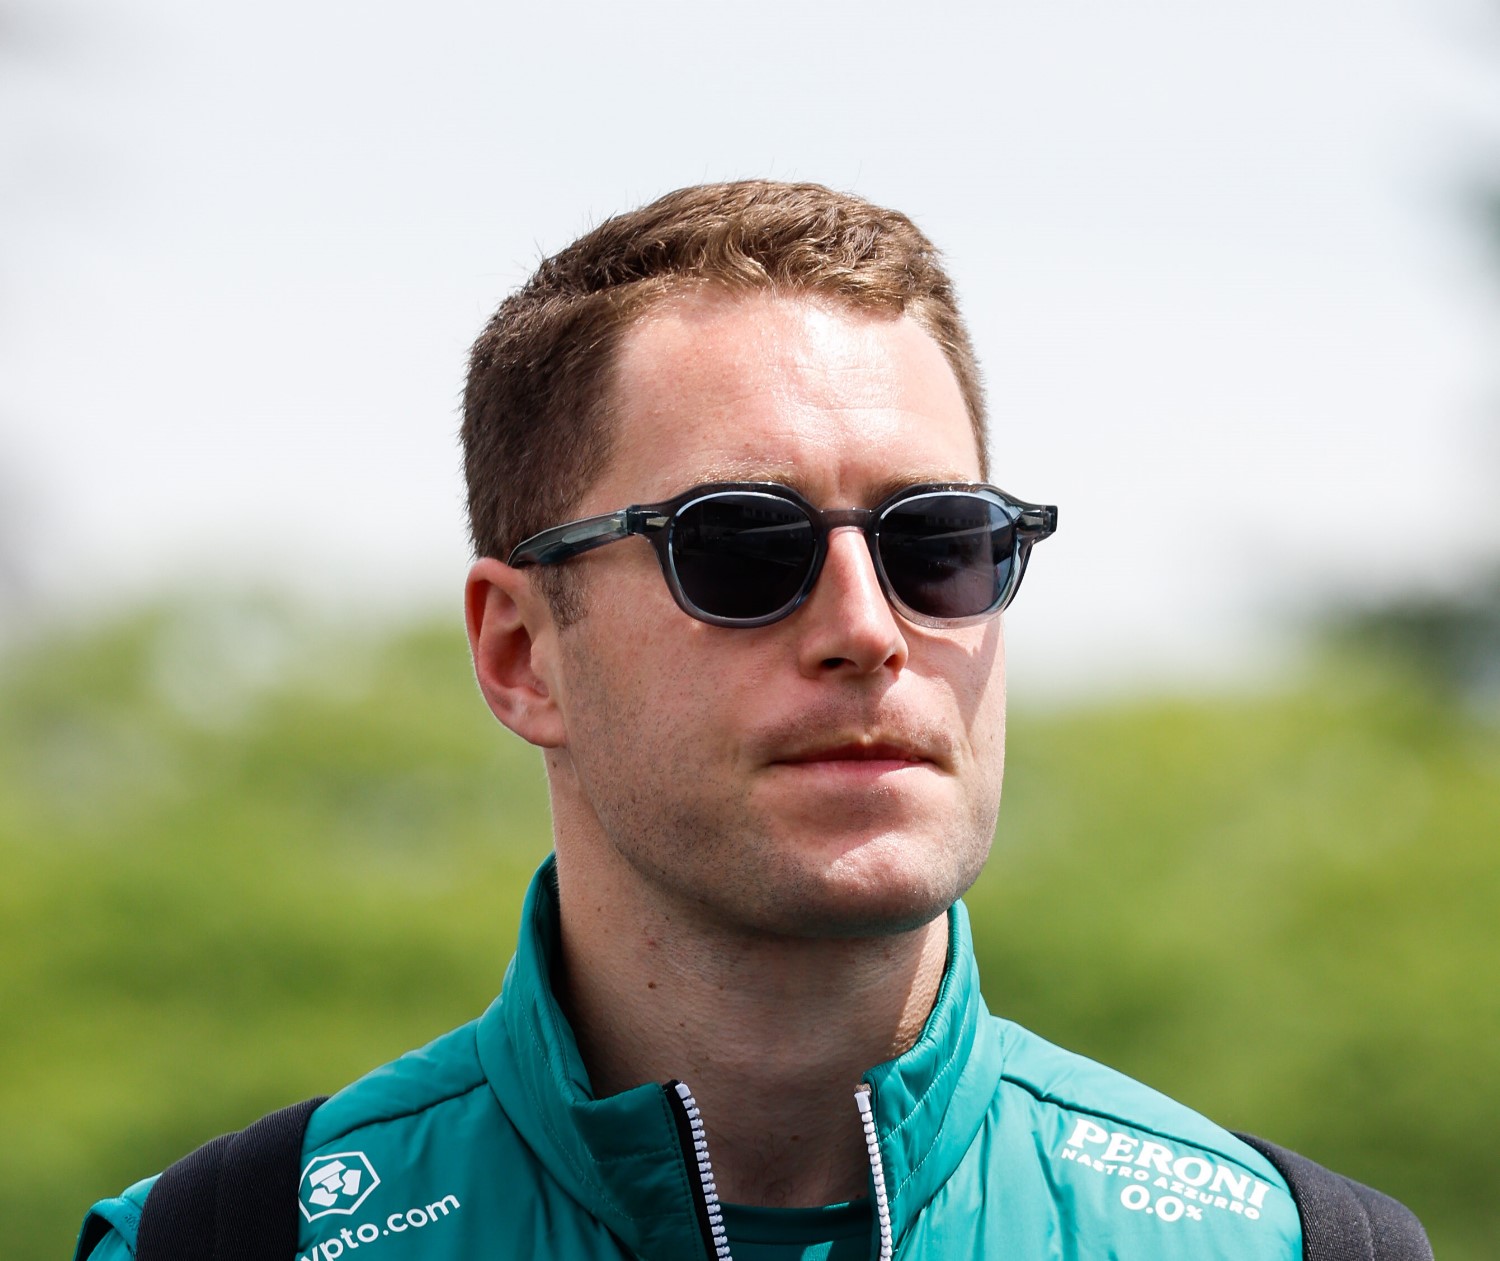 Stoffel Vandoorne, Reserve Driver, Aston Martin F1 Team